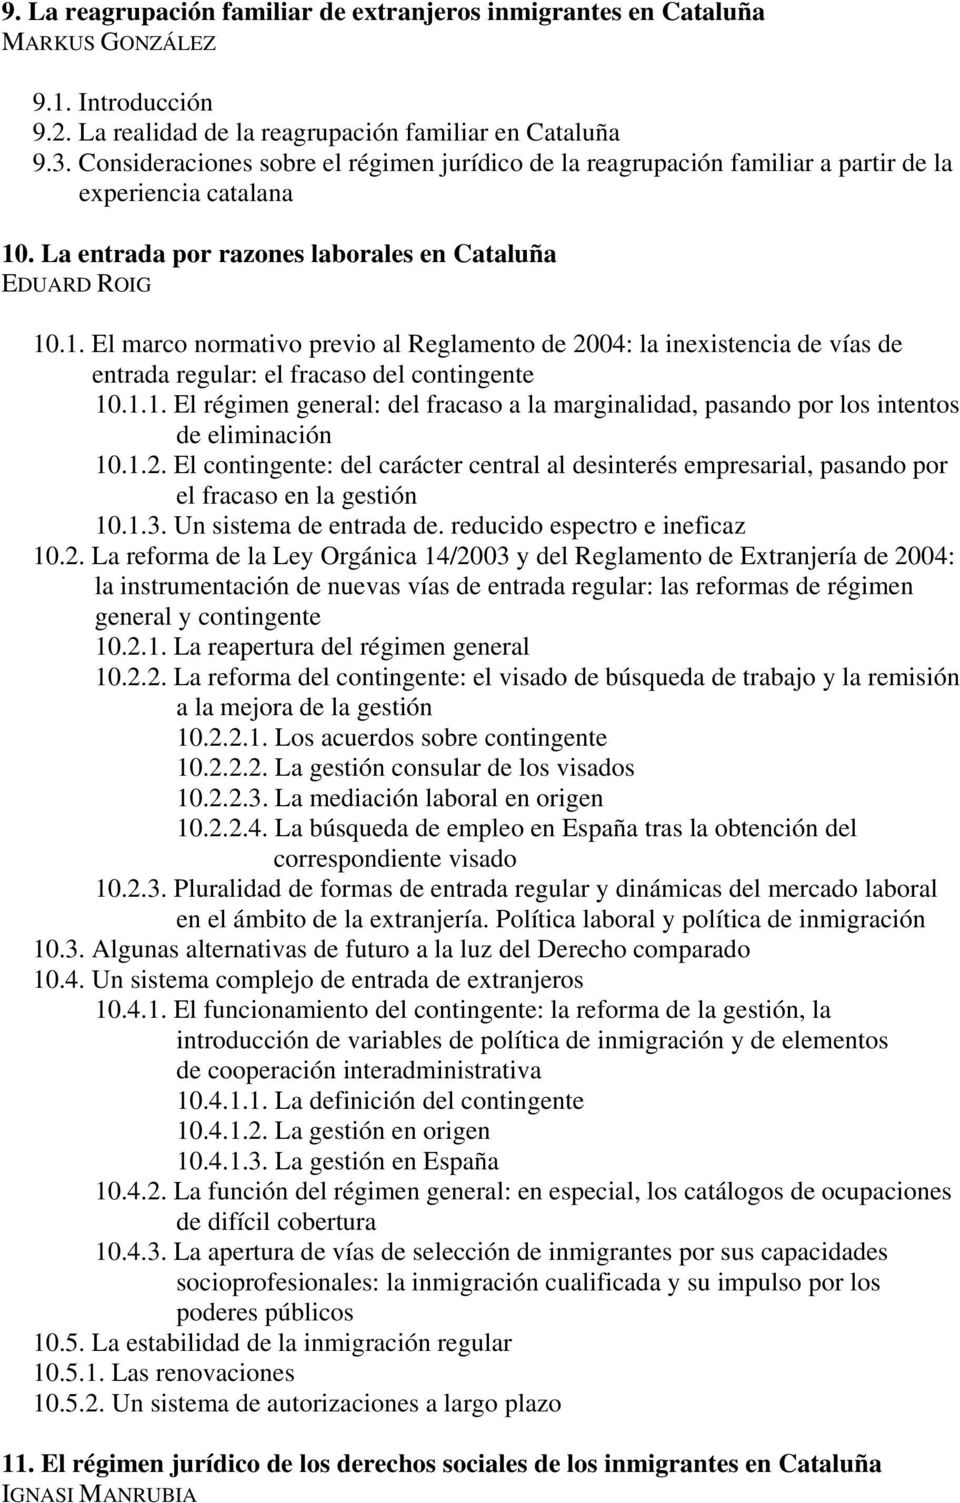 . La entrada por razones laborales en Cataluña EDUARD ROIG 10.1. El marco normativo previo al Reglamento de 2004: la inexistencia de vías de entrada regular: el fracaso del contingente 10.1.1. El régimen general: del fracaso a la marginalidad, pasando por los intentos de eliminación 10.